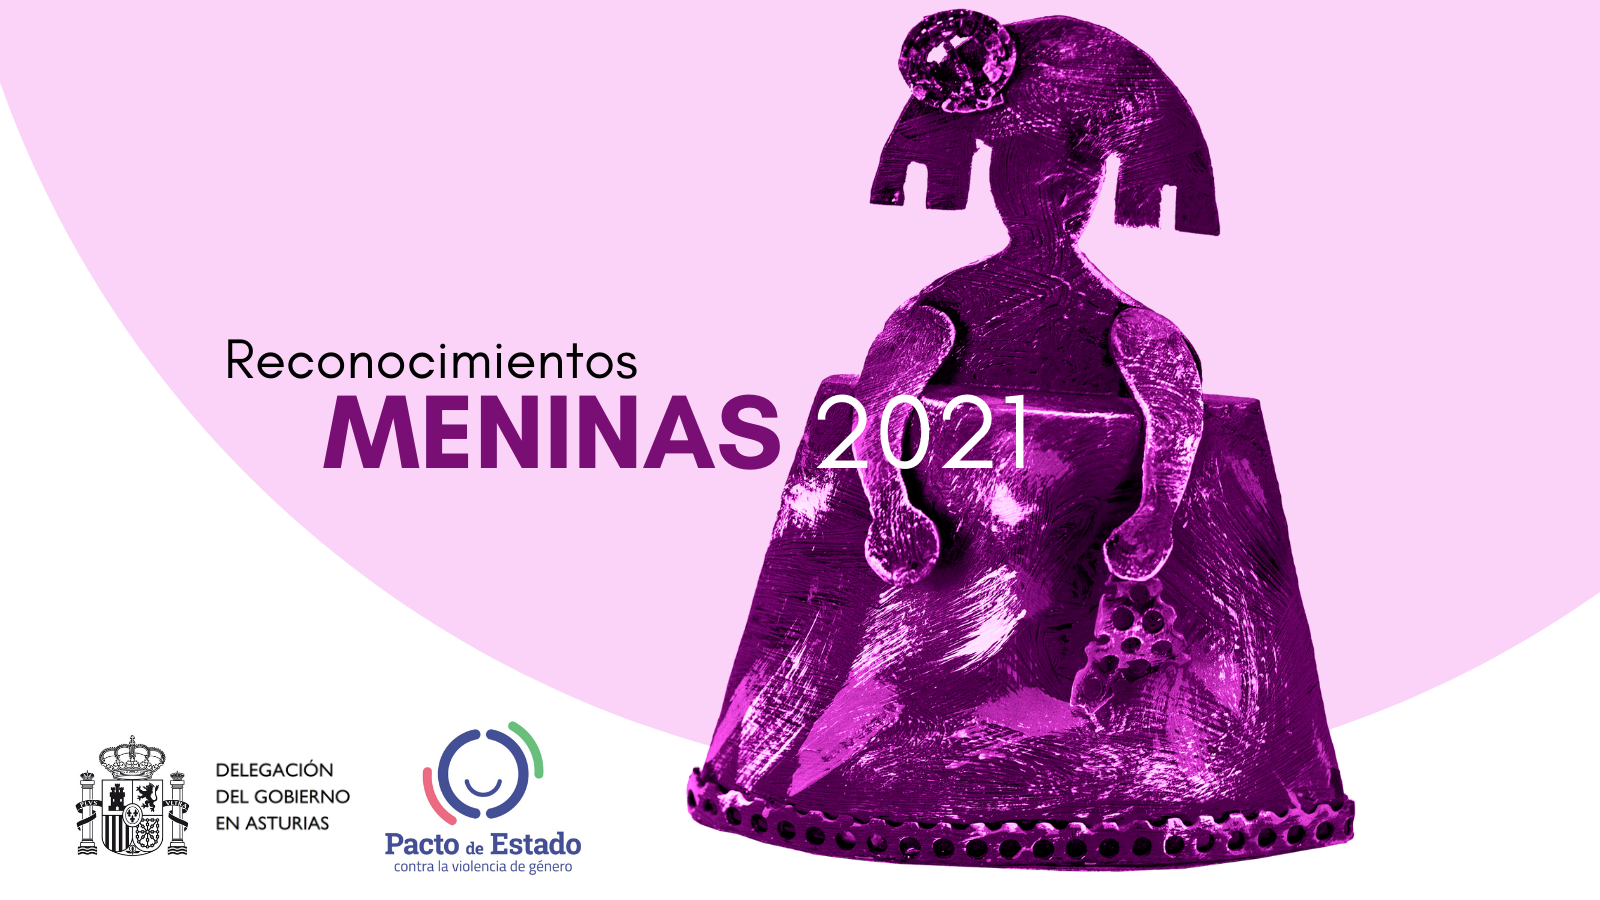 La Delegación del Gobierno en Asturias concede a APRAMP Asturias el reconocimiento Menina 2021 